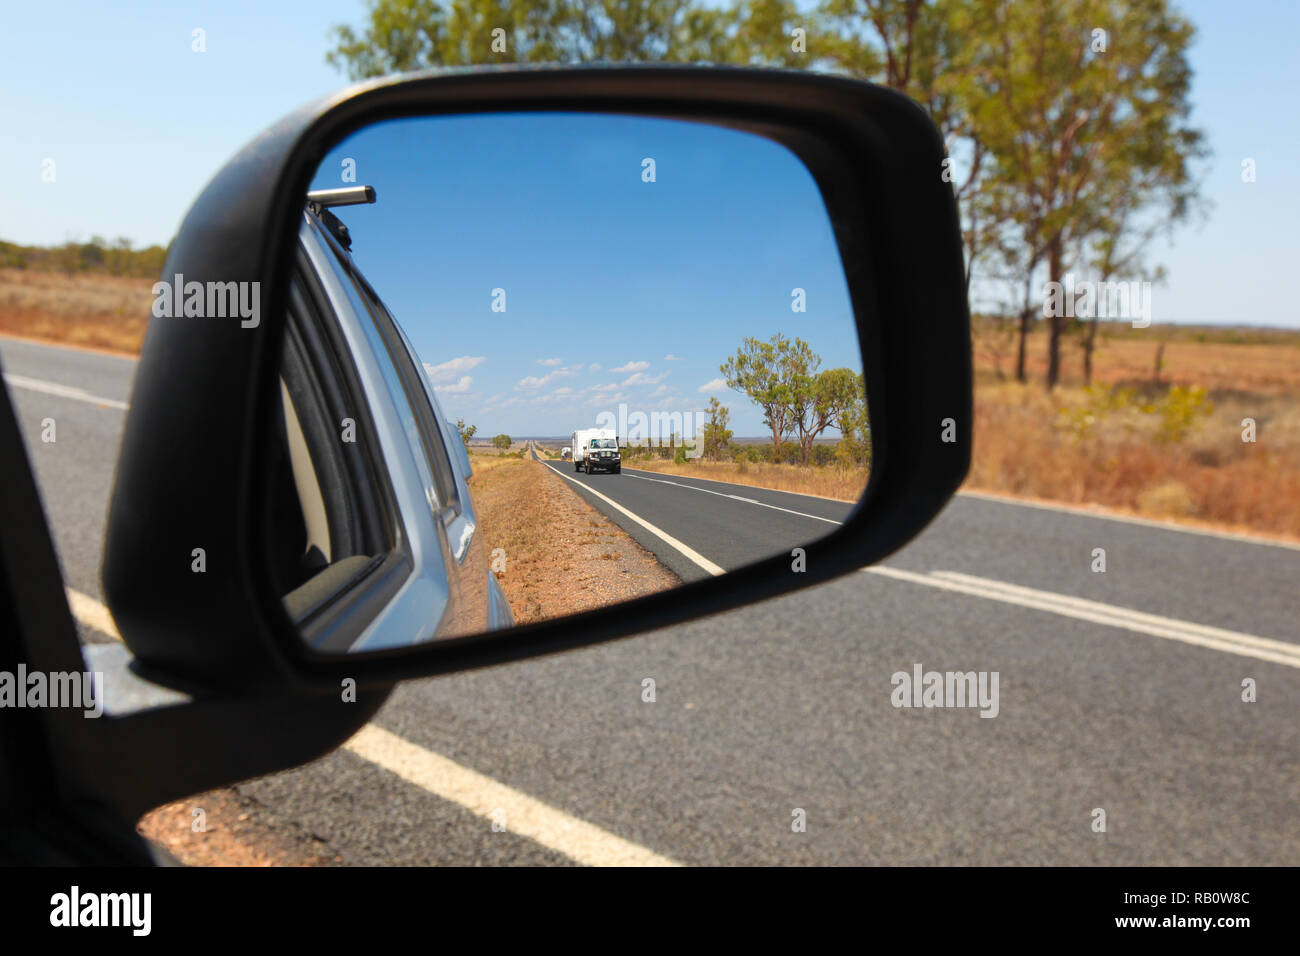 Blick in den Spiegel auf der Carnarvon Highway in Central Queensland Australien. 4WD-Fahrzeug Faltcaravan und Outback australische Landschaft Stockfoto